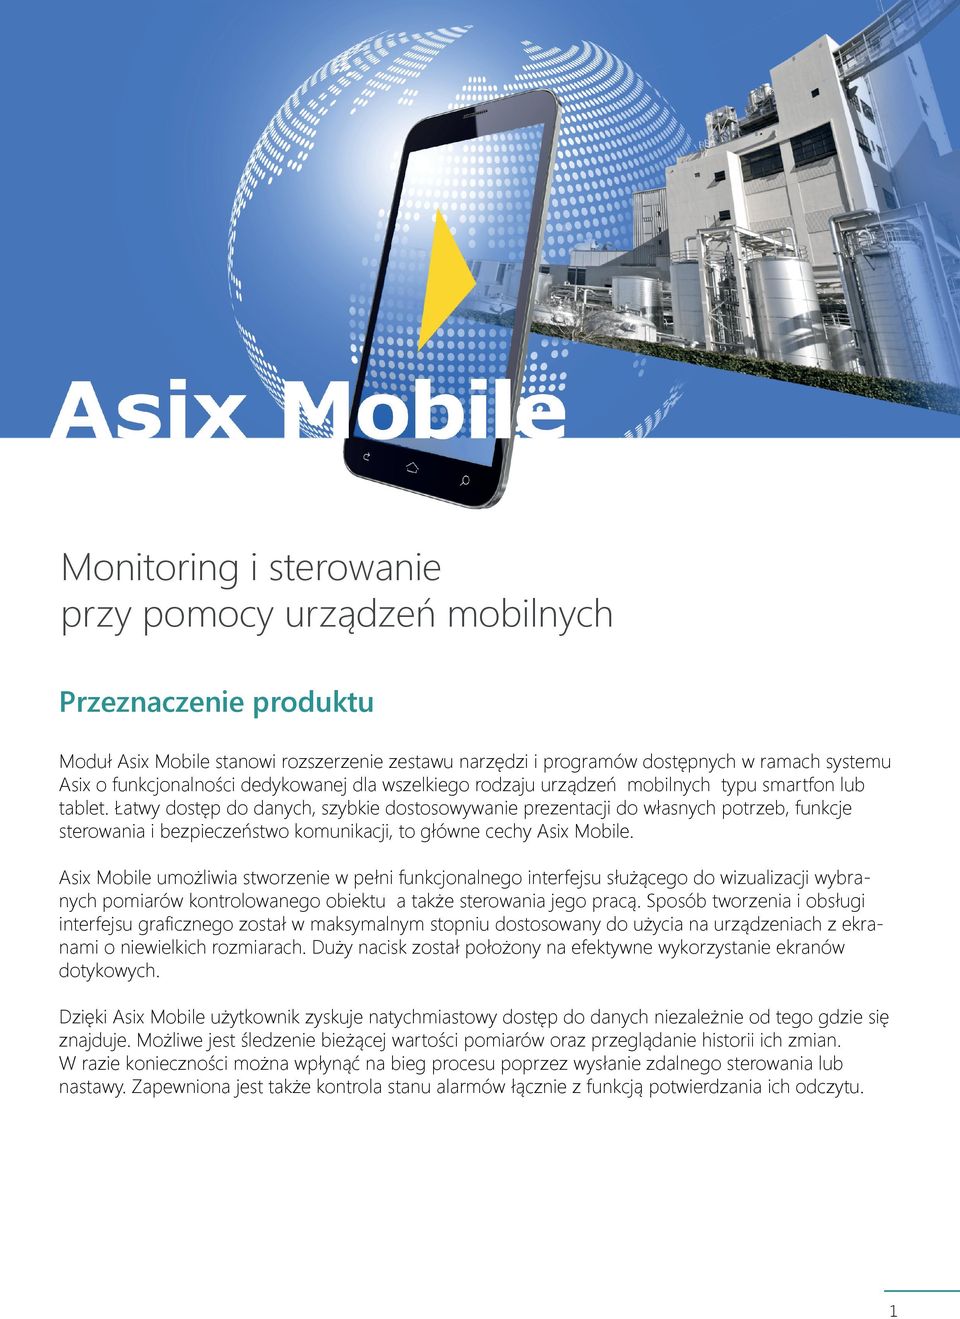 Łatwy dostęp do danych, szybkie dostosowywanie prezentacji do własnych potrzeb, funkcje sterowania i bezpieczeństwo komunikacji, to główne cechy Asix Mobile.